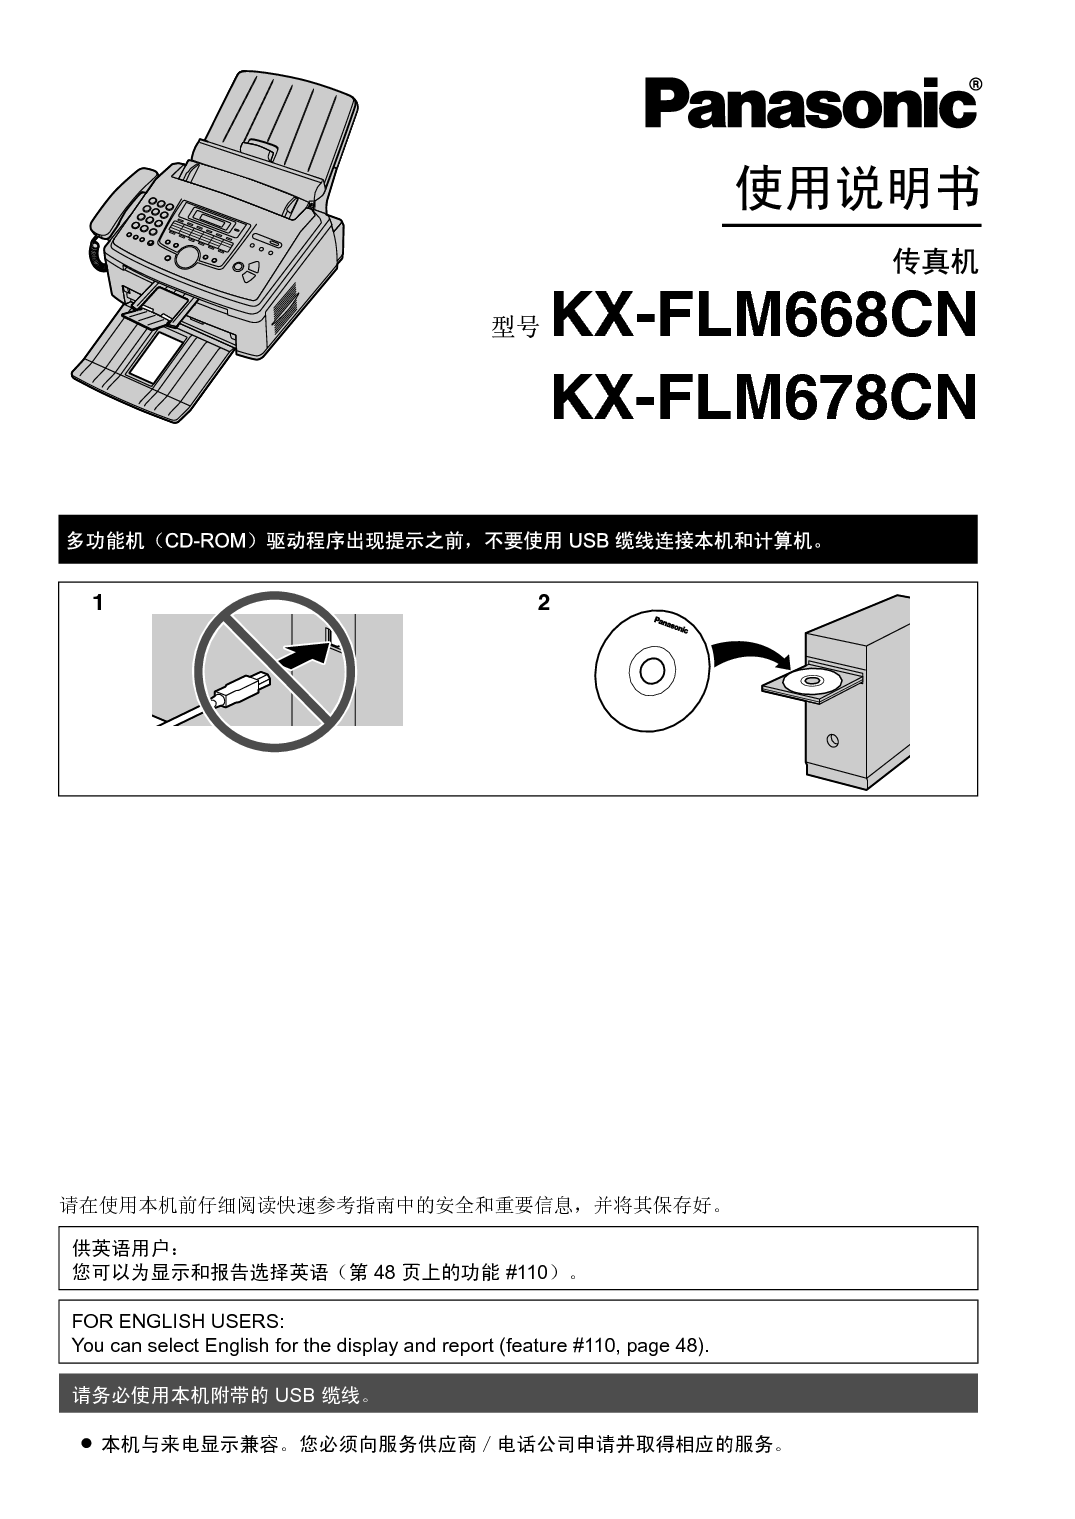 松下 Panasonic KX-FLM668CN 使用说明书 封面